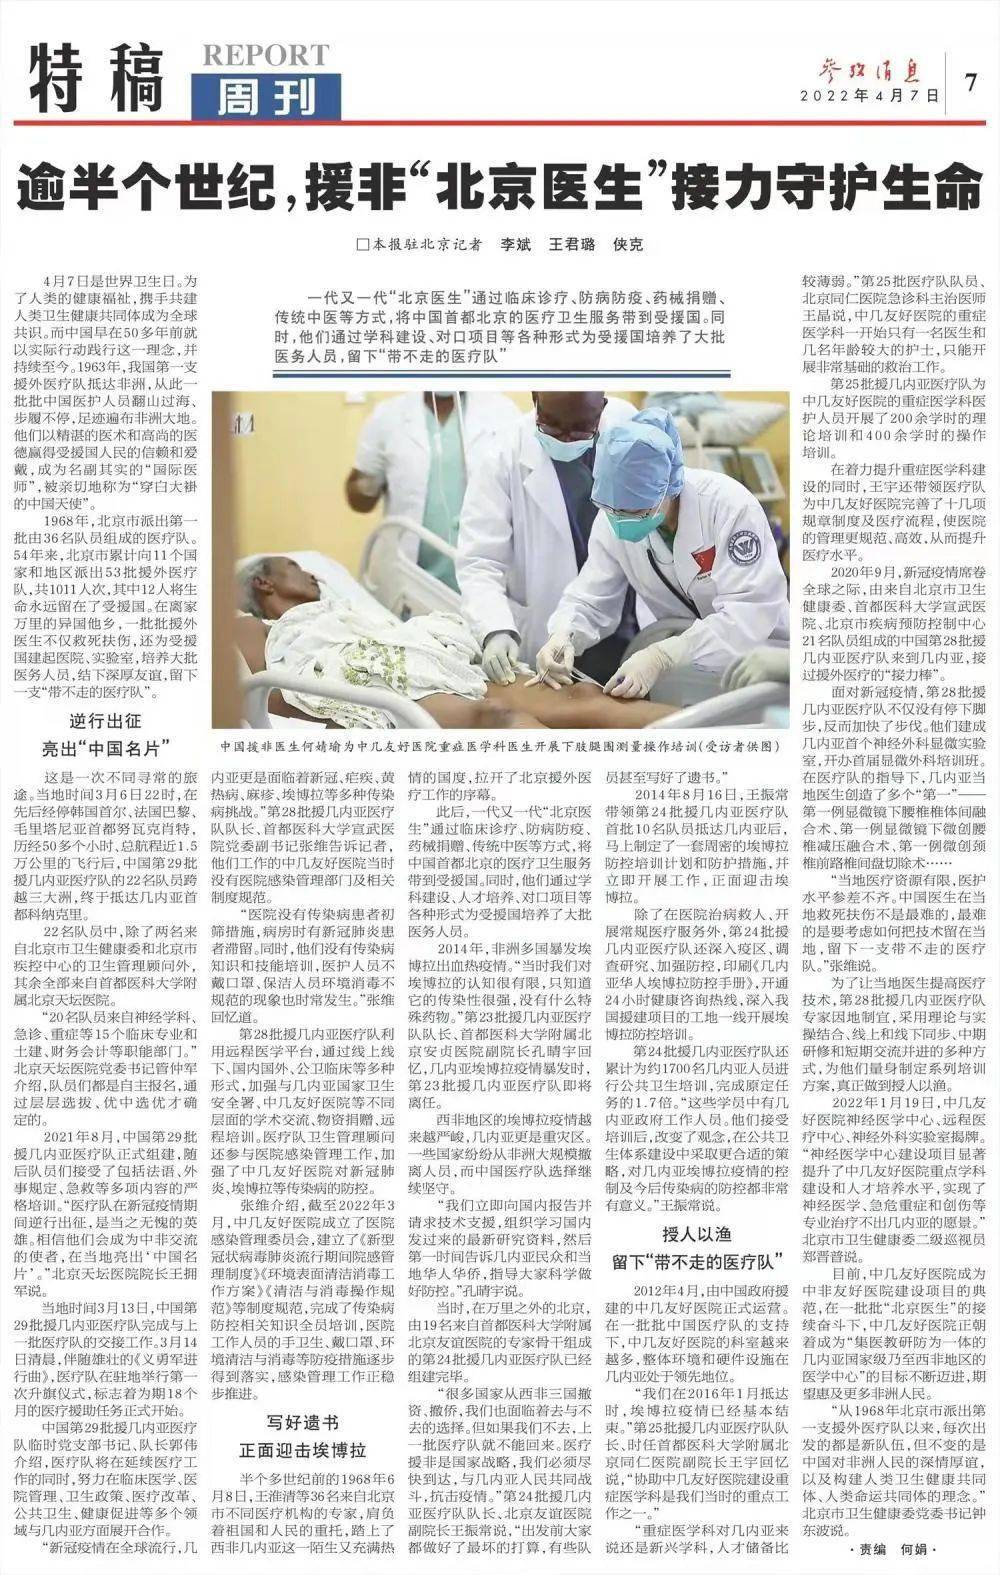 参考消息特稿逾半个世纪援非北京医生接力守护生命